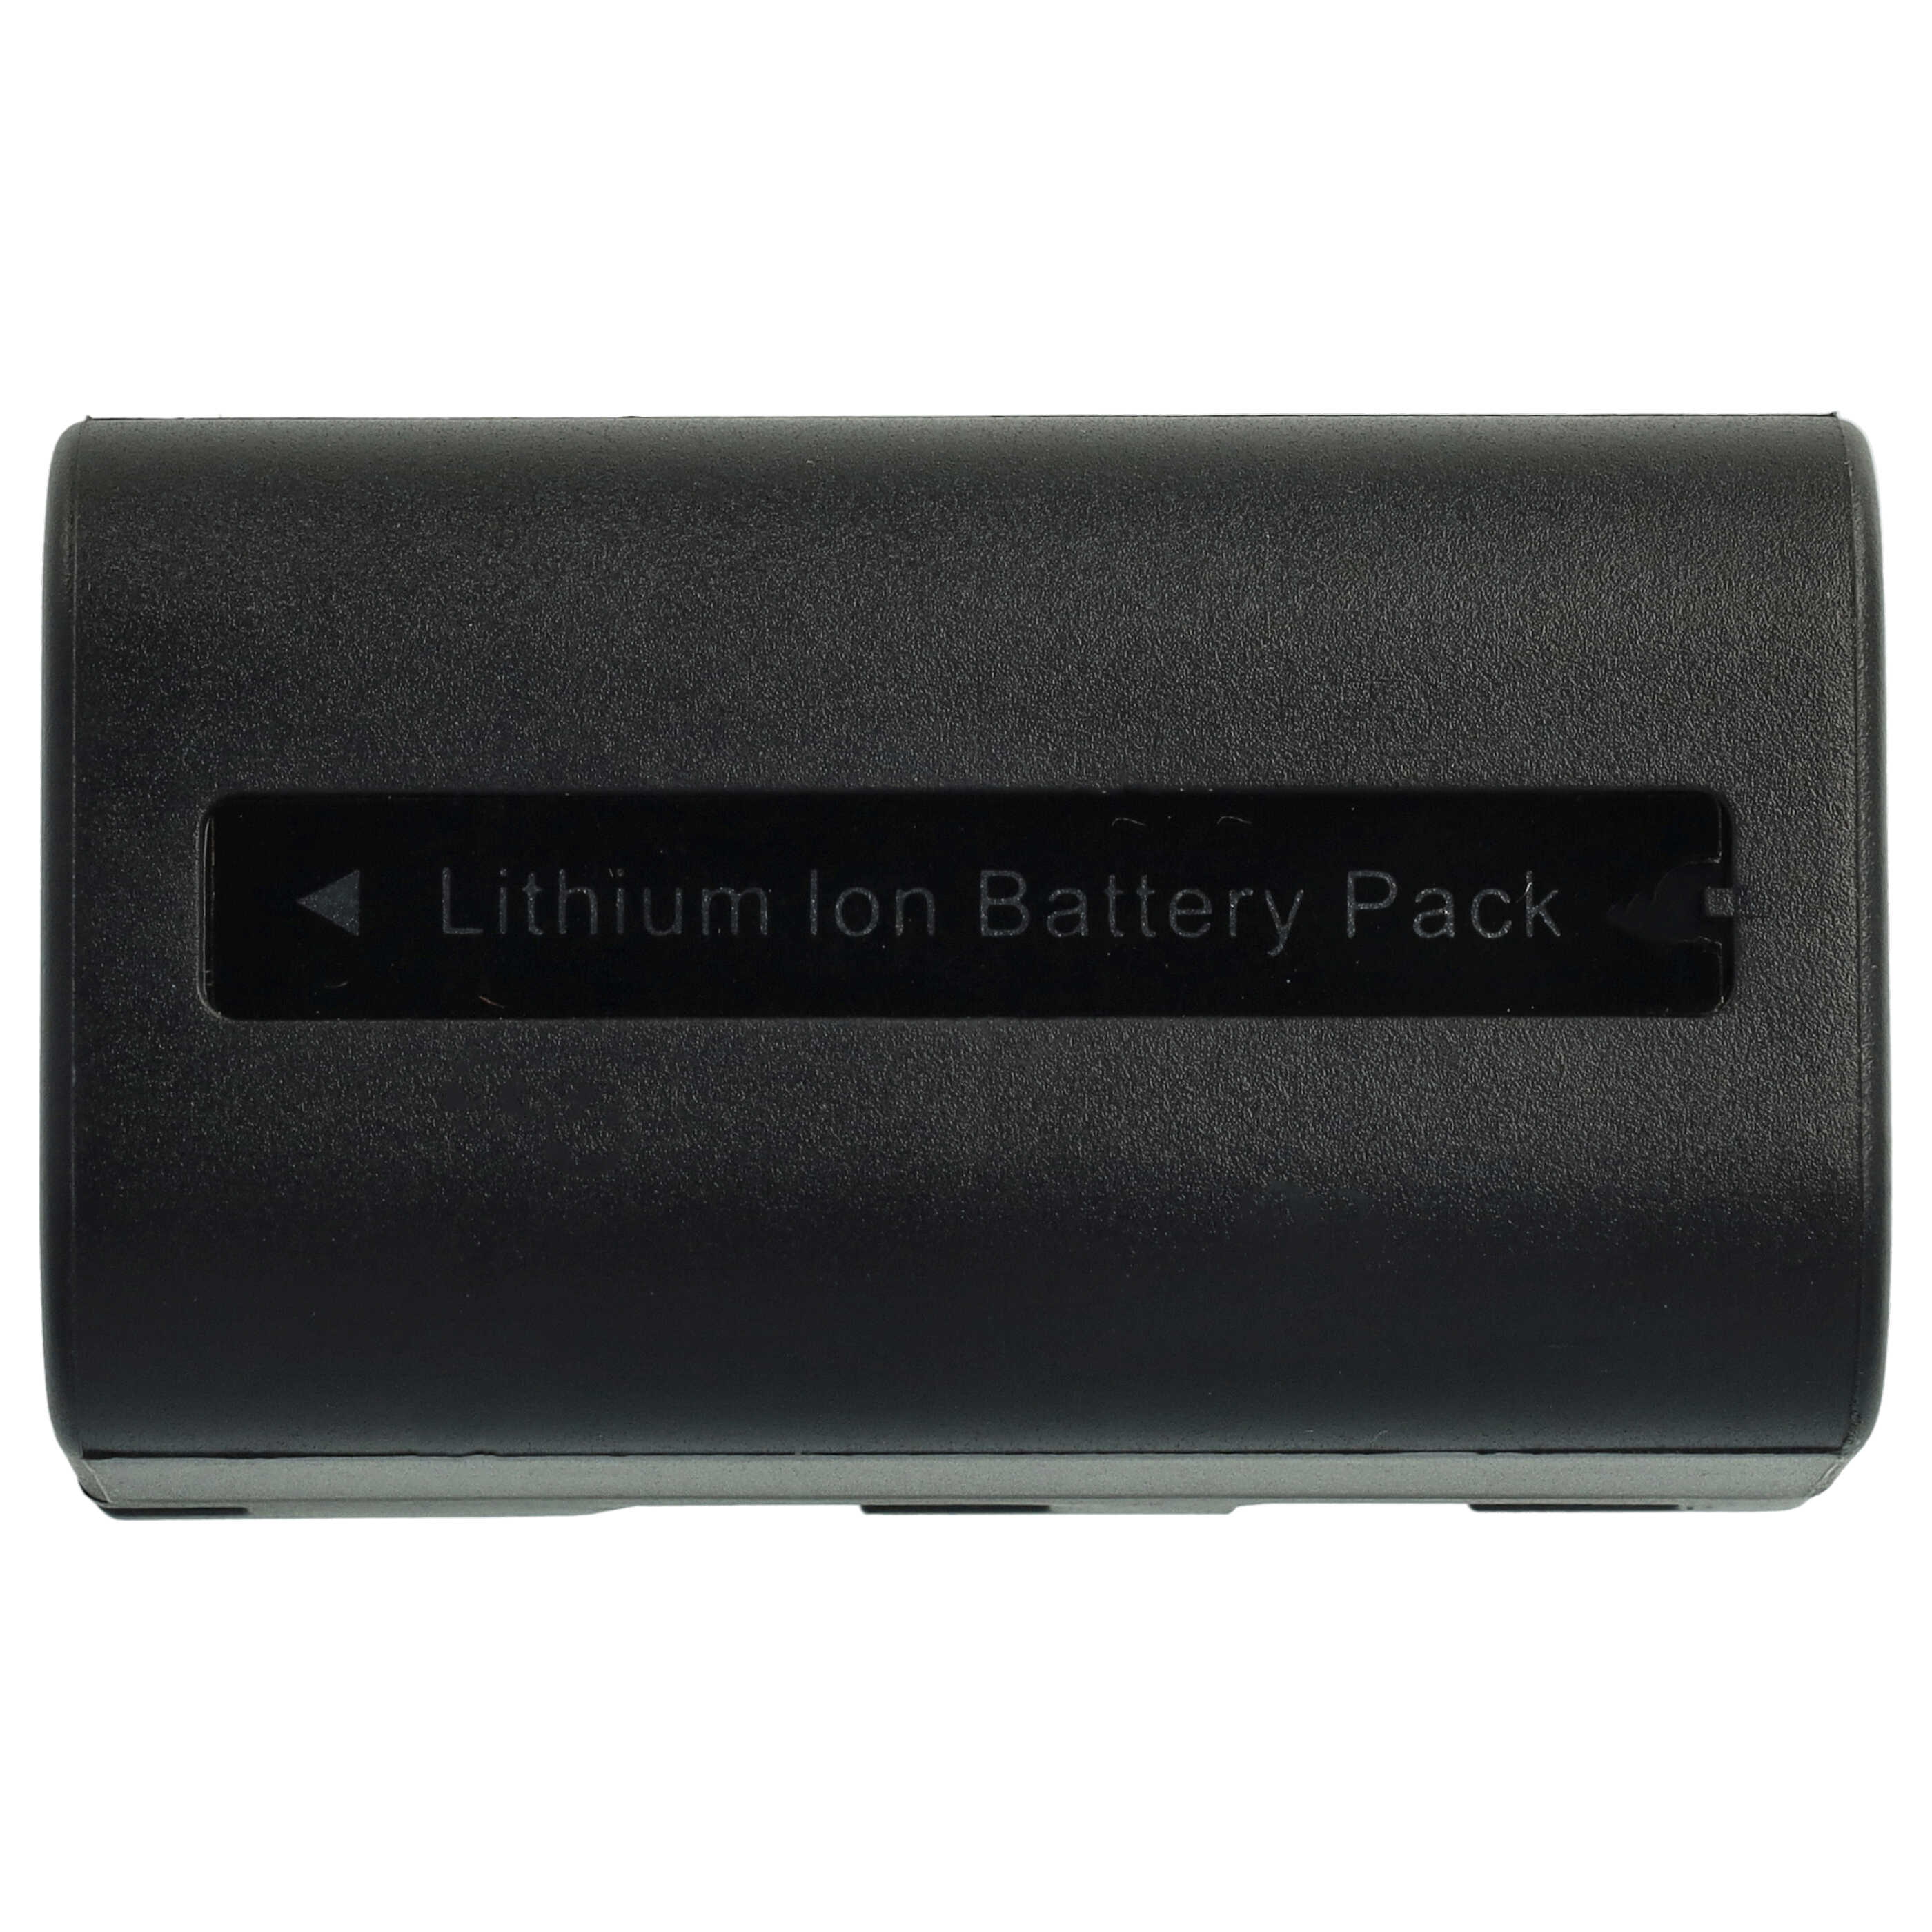 3x Akumulator do aparatu cyfrowego zamiennik Samsung SB-LSM80, SB-LSM320, SB-LSM160 - 1640 mAh 7,2 V Li-Ion